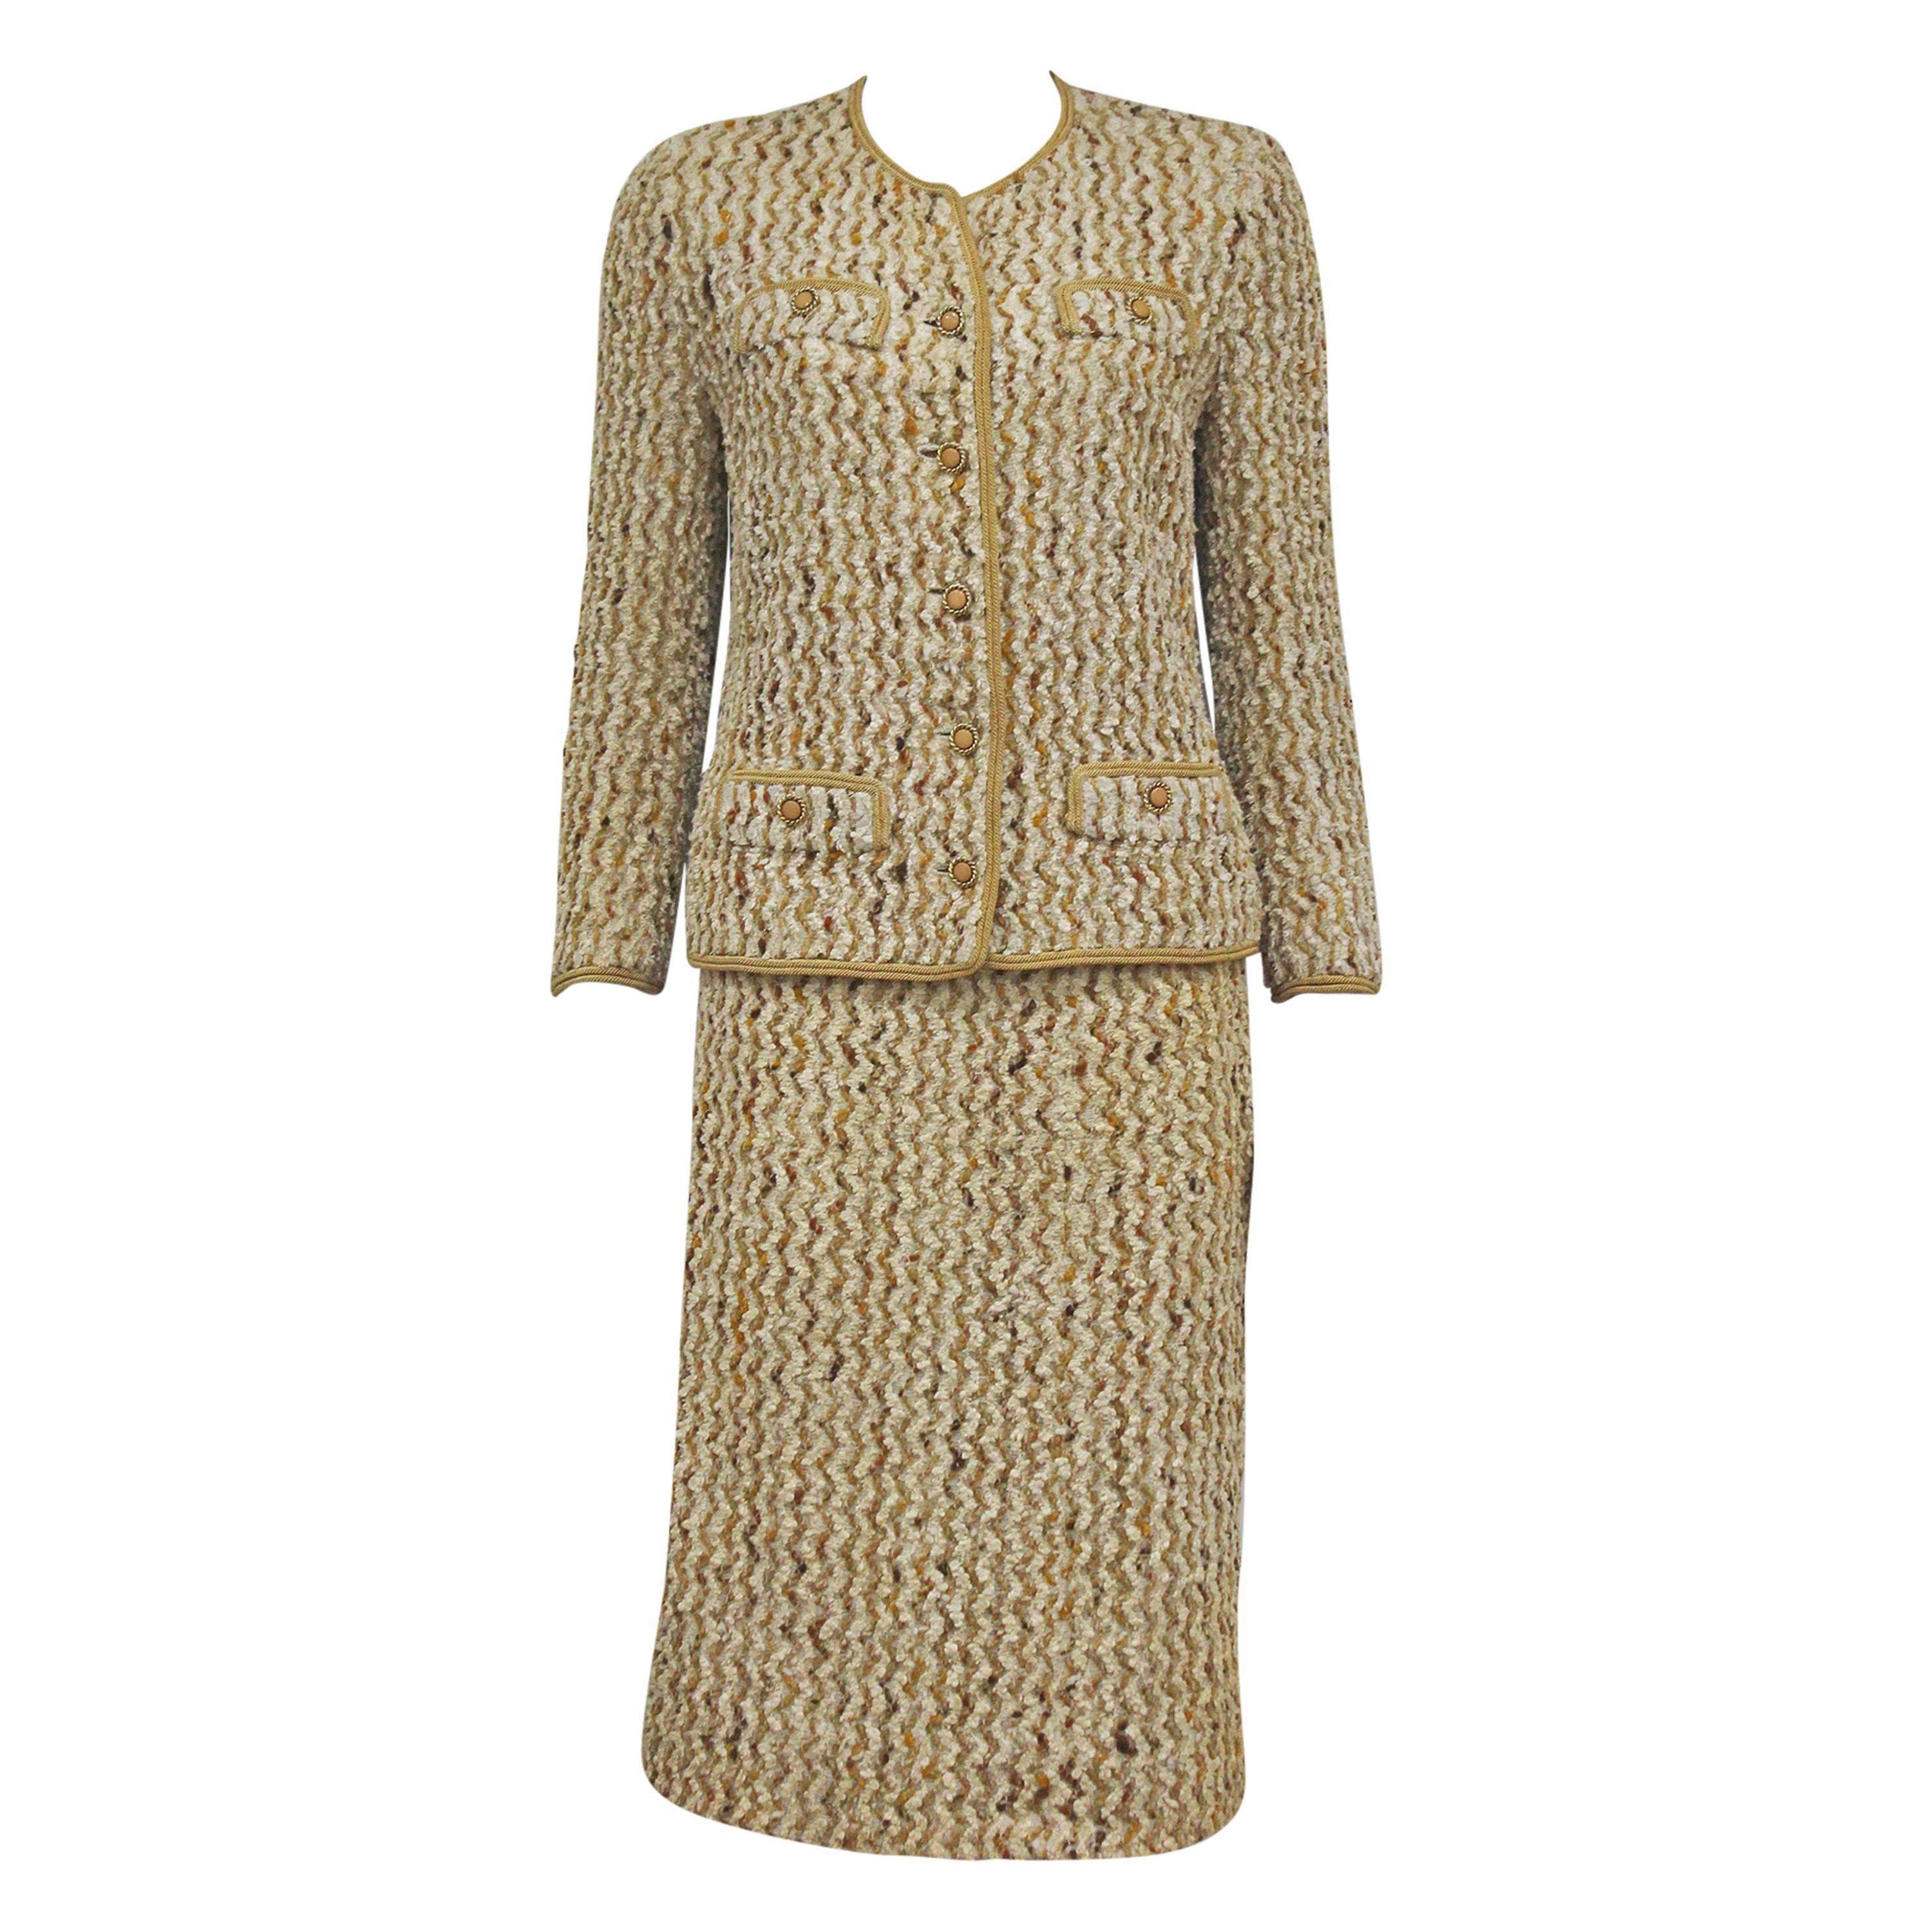 Chanel haute couture bouclé skirt suit, c.1965